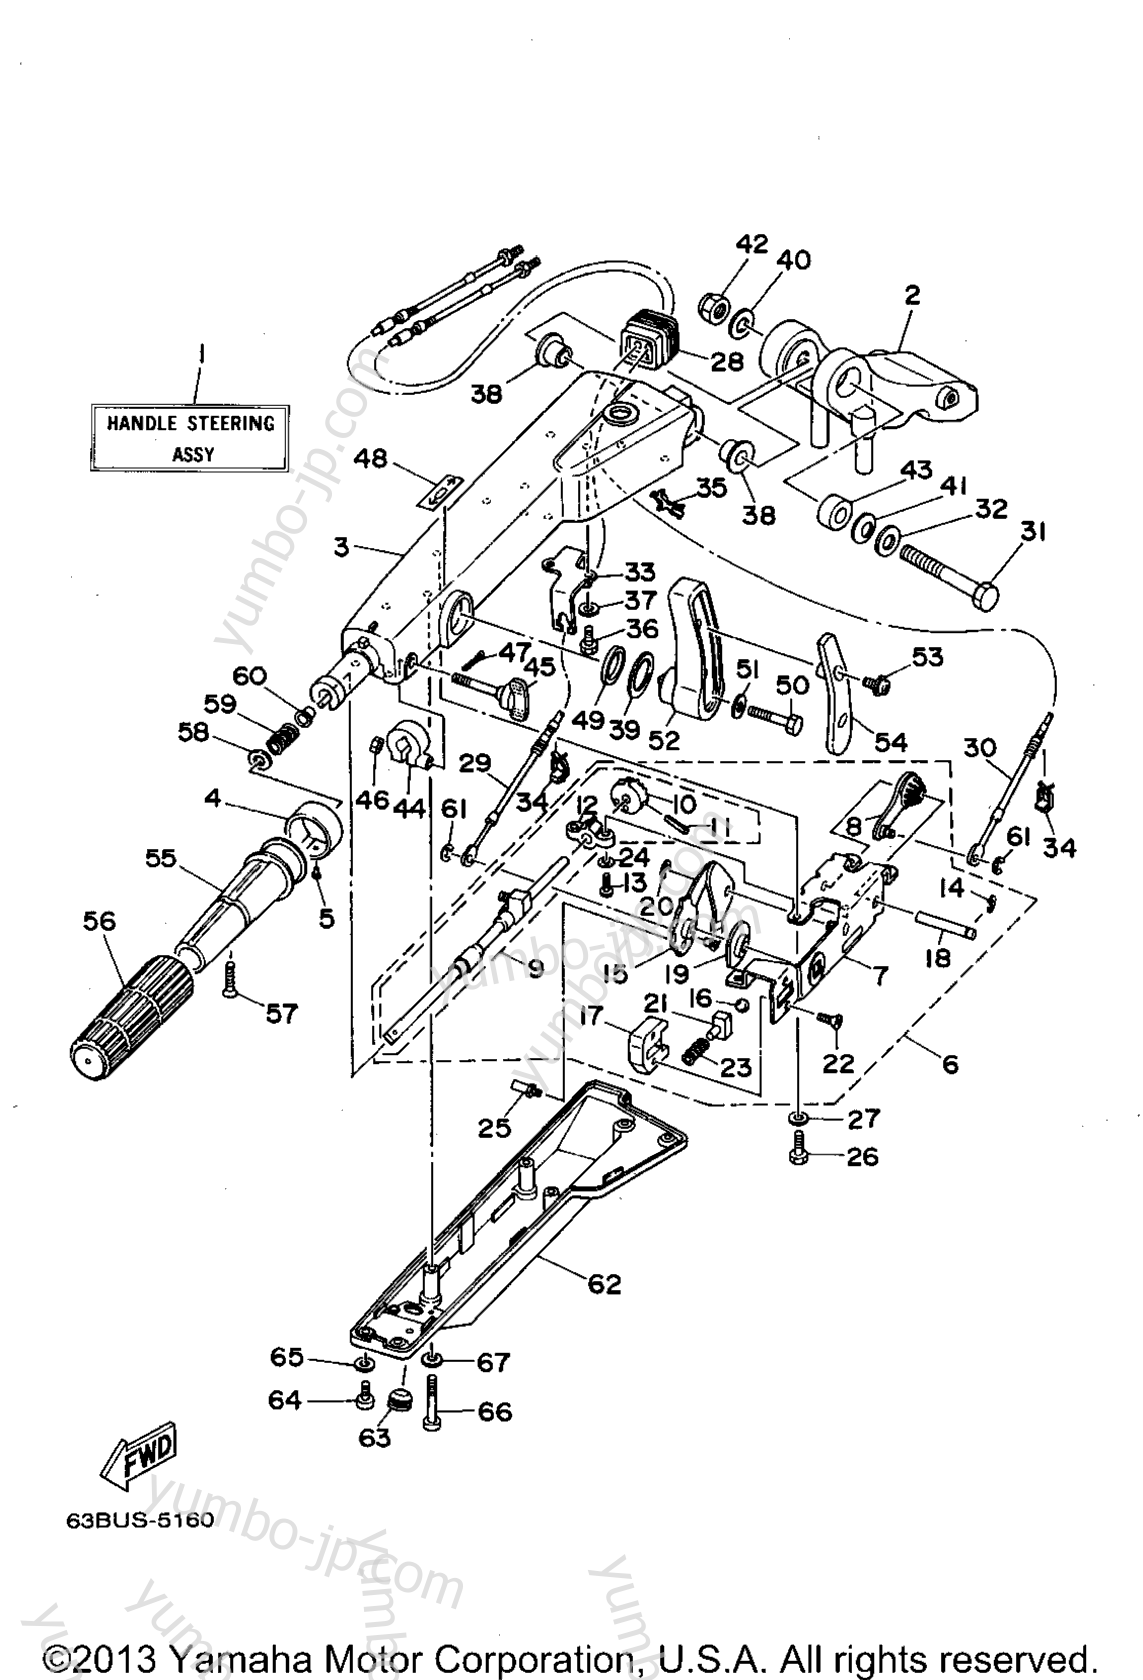 Steering для лодочных моторов YAMAHA 40TLRT 1995 г.